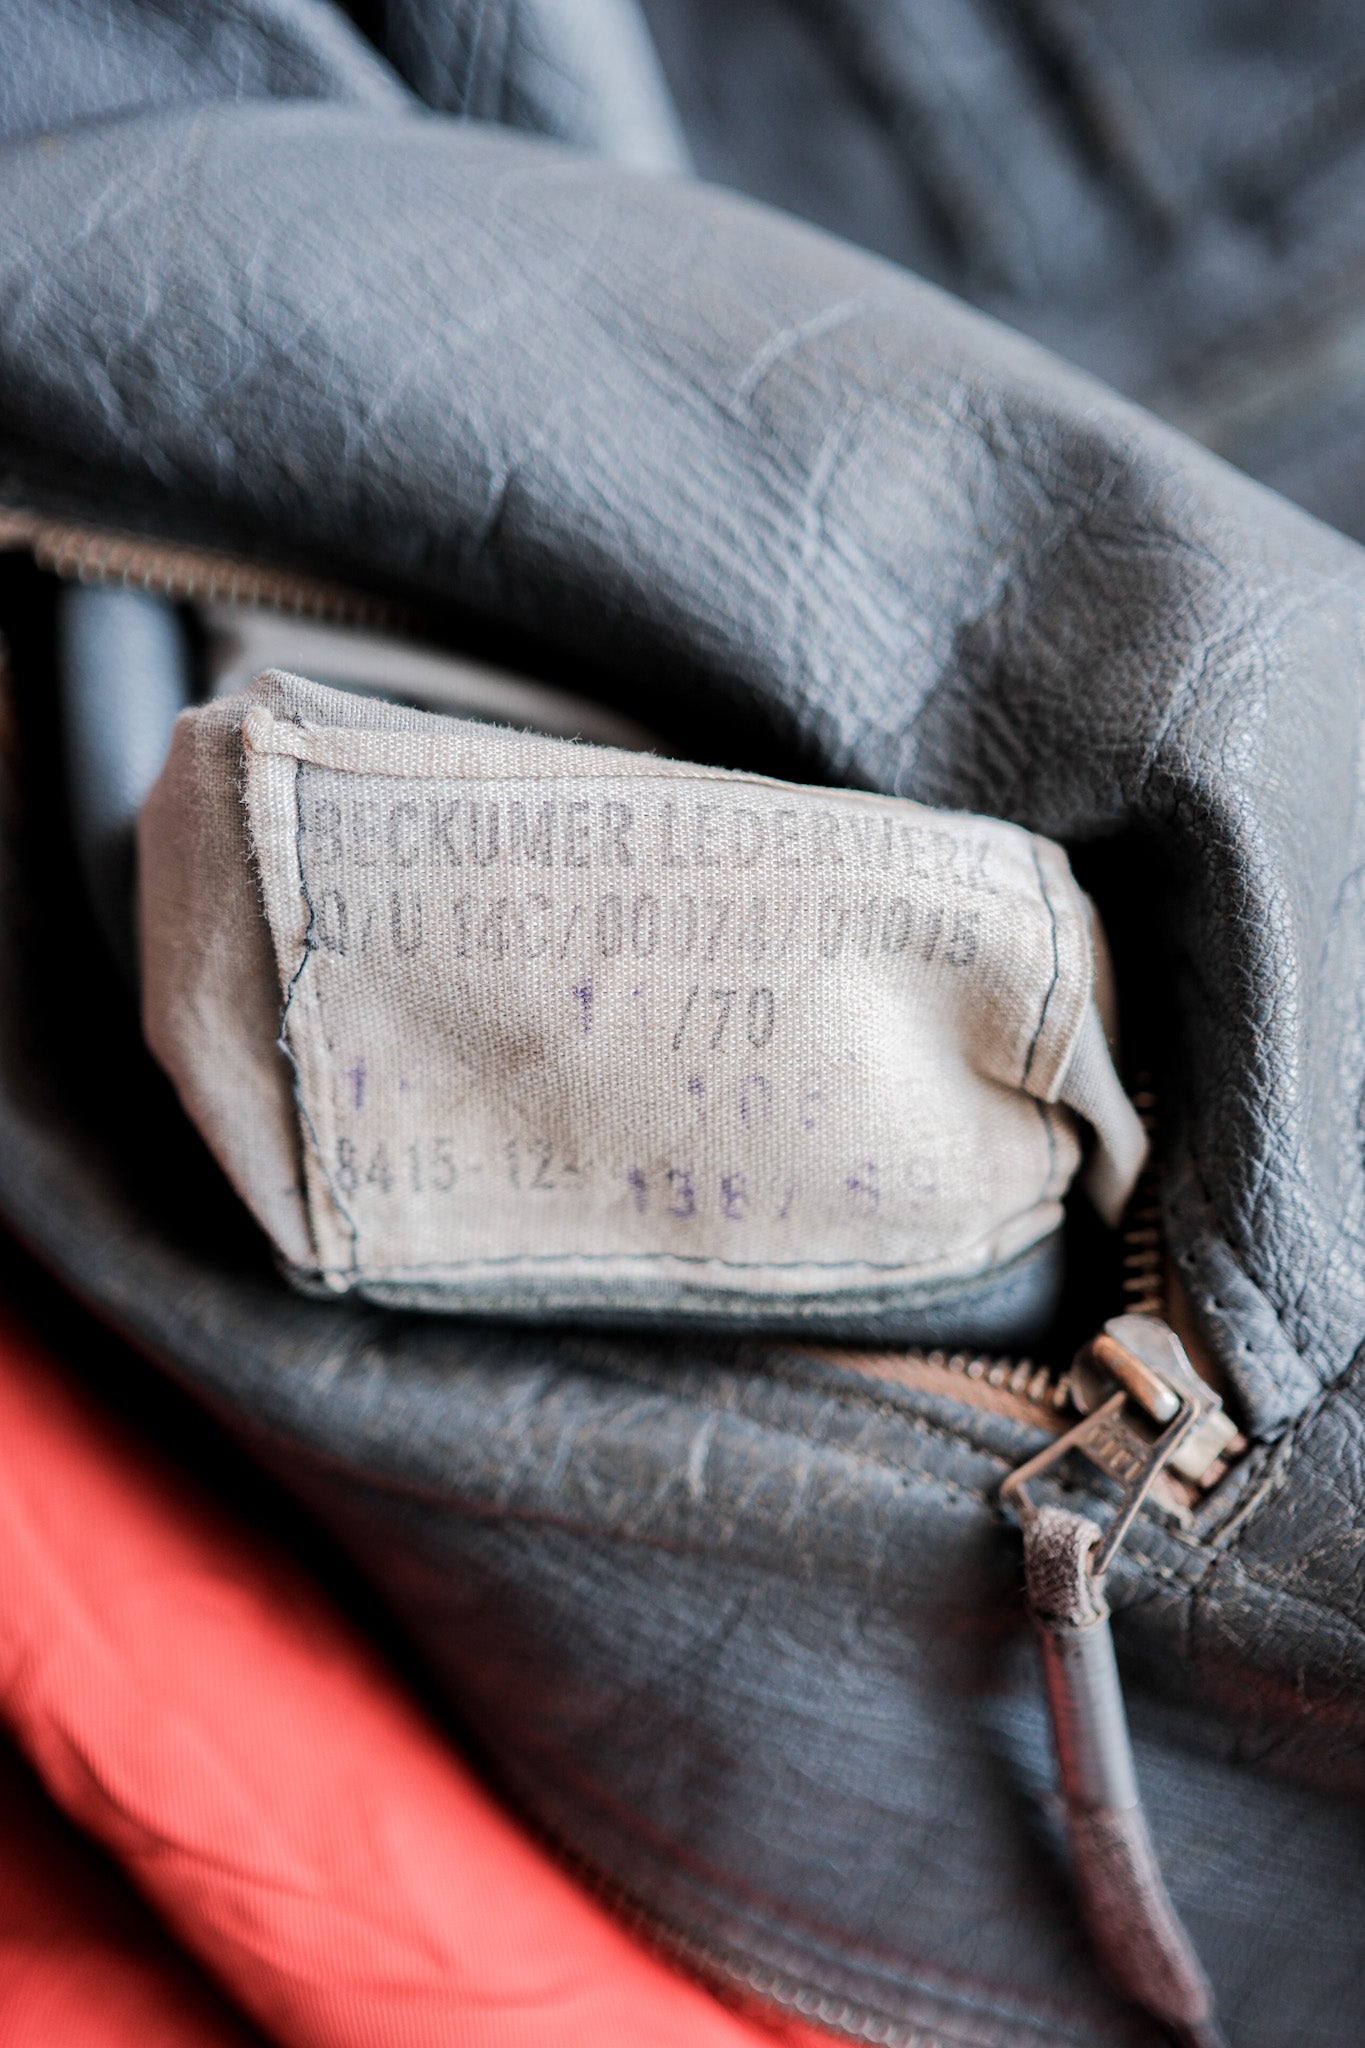 [〜70年代]西德空軍飛行員皮革夾克尺寸。13